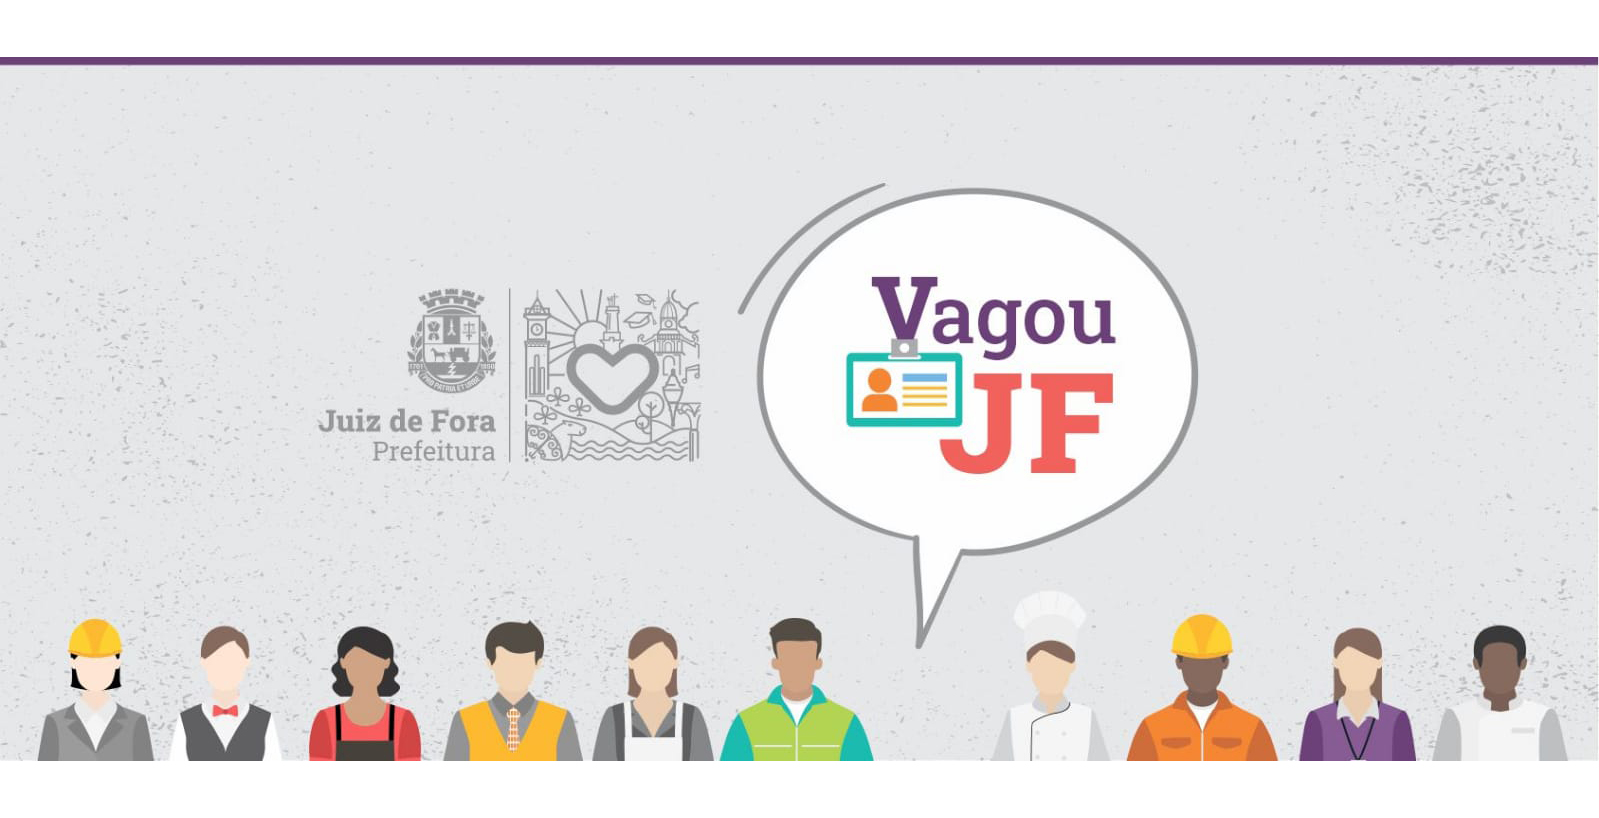 Portal de Notícias PJF | “Vagou JF” da PJF tem vagas abertas para estágio financeiro e outras oportunidades - SEDIC | 4/10/2022